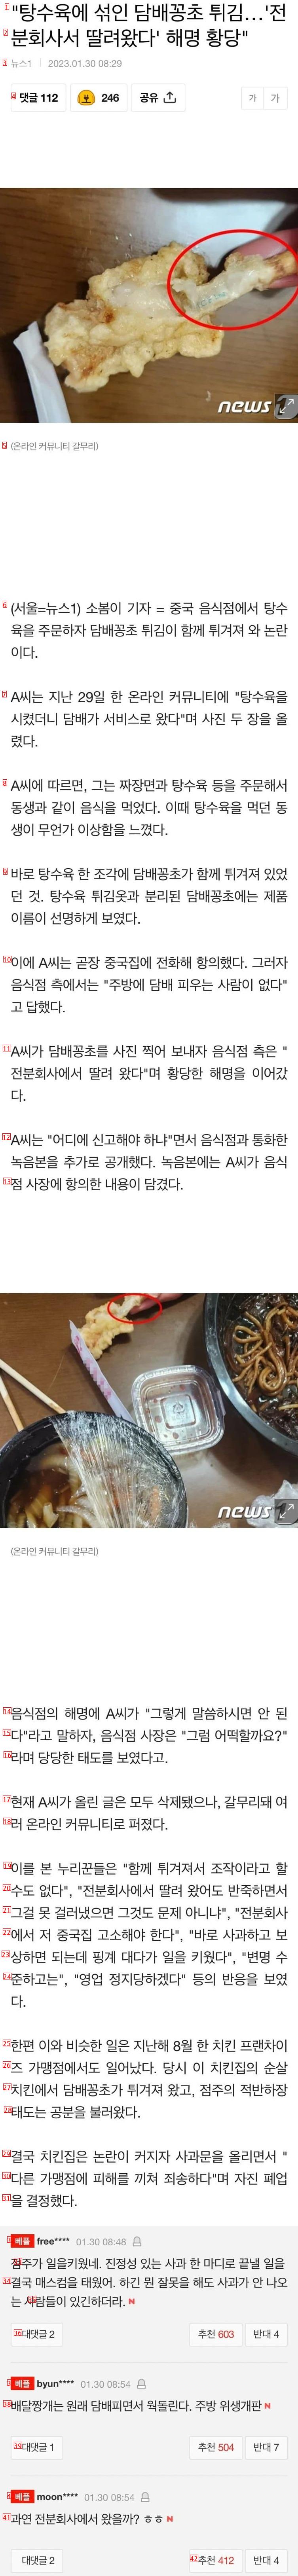 タバコ味酢豚に関する中華料理店の説明